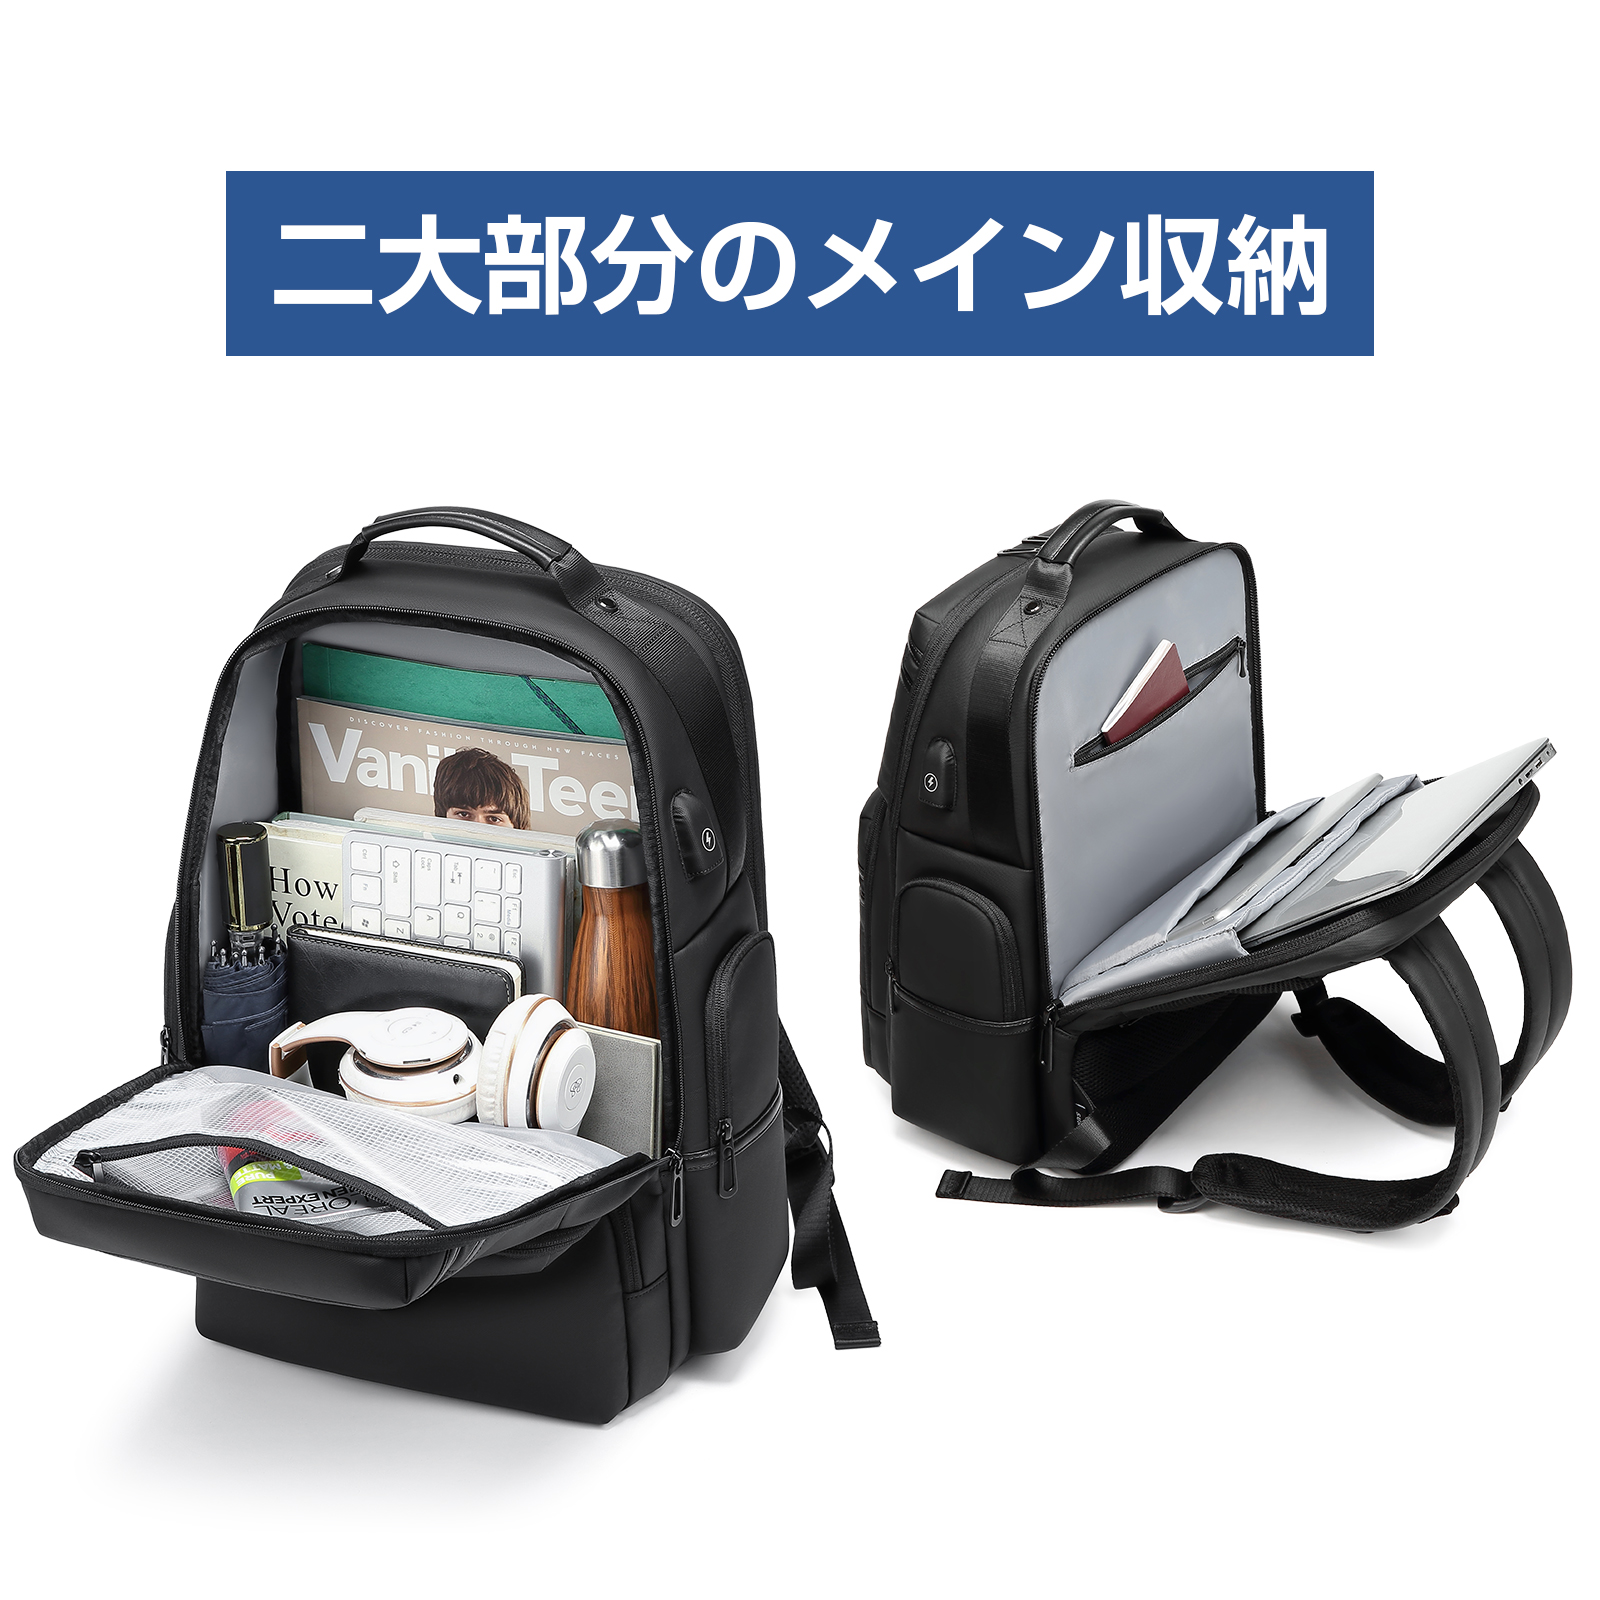 ビジネス リュック メンズ 大容量 リュック メンズ 通学 通勤 乾湿分離 撥水加工 仕分け 超軽量 USBポート 人気 bag バックパック 鞄  カバン アウトドア SUNOGE | Sunoge公式ストア